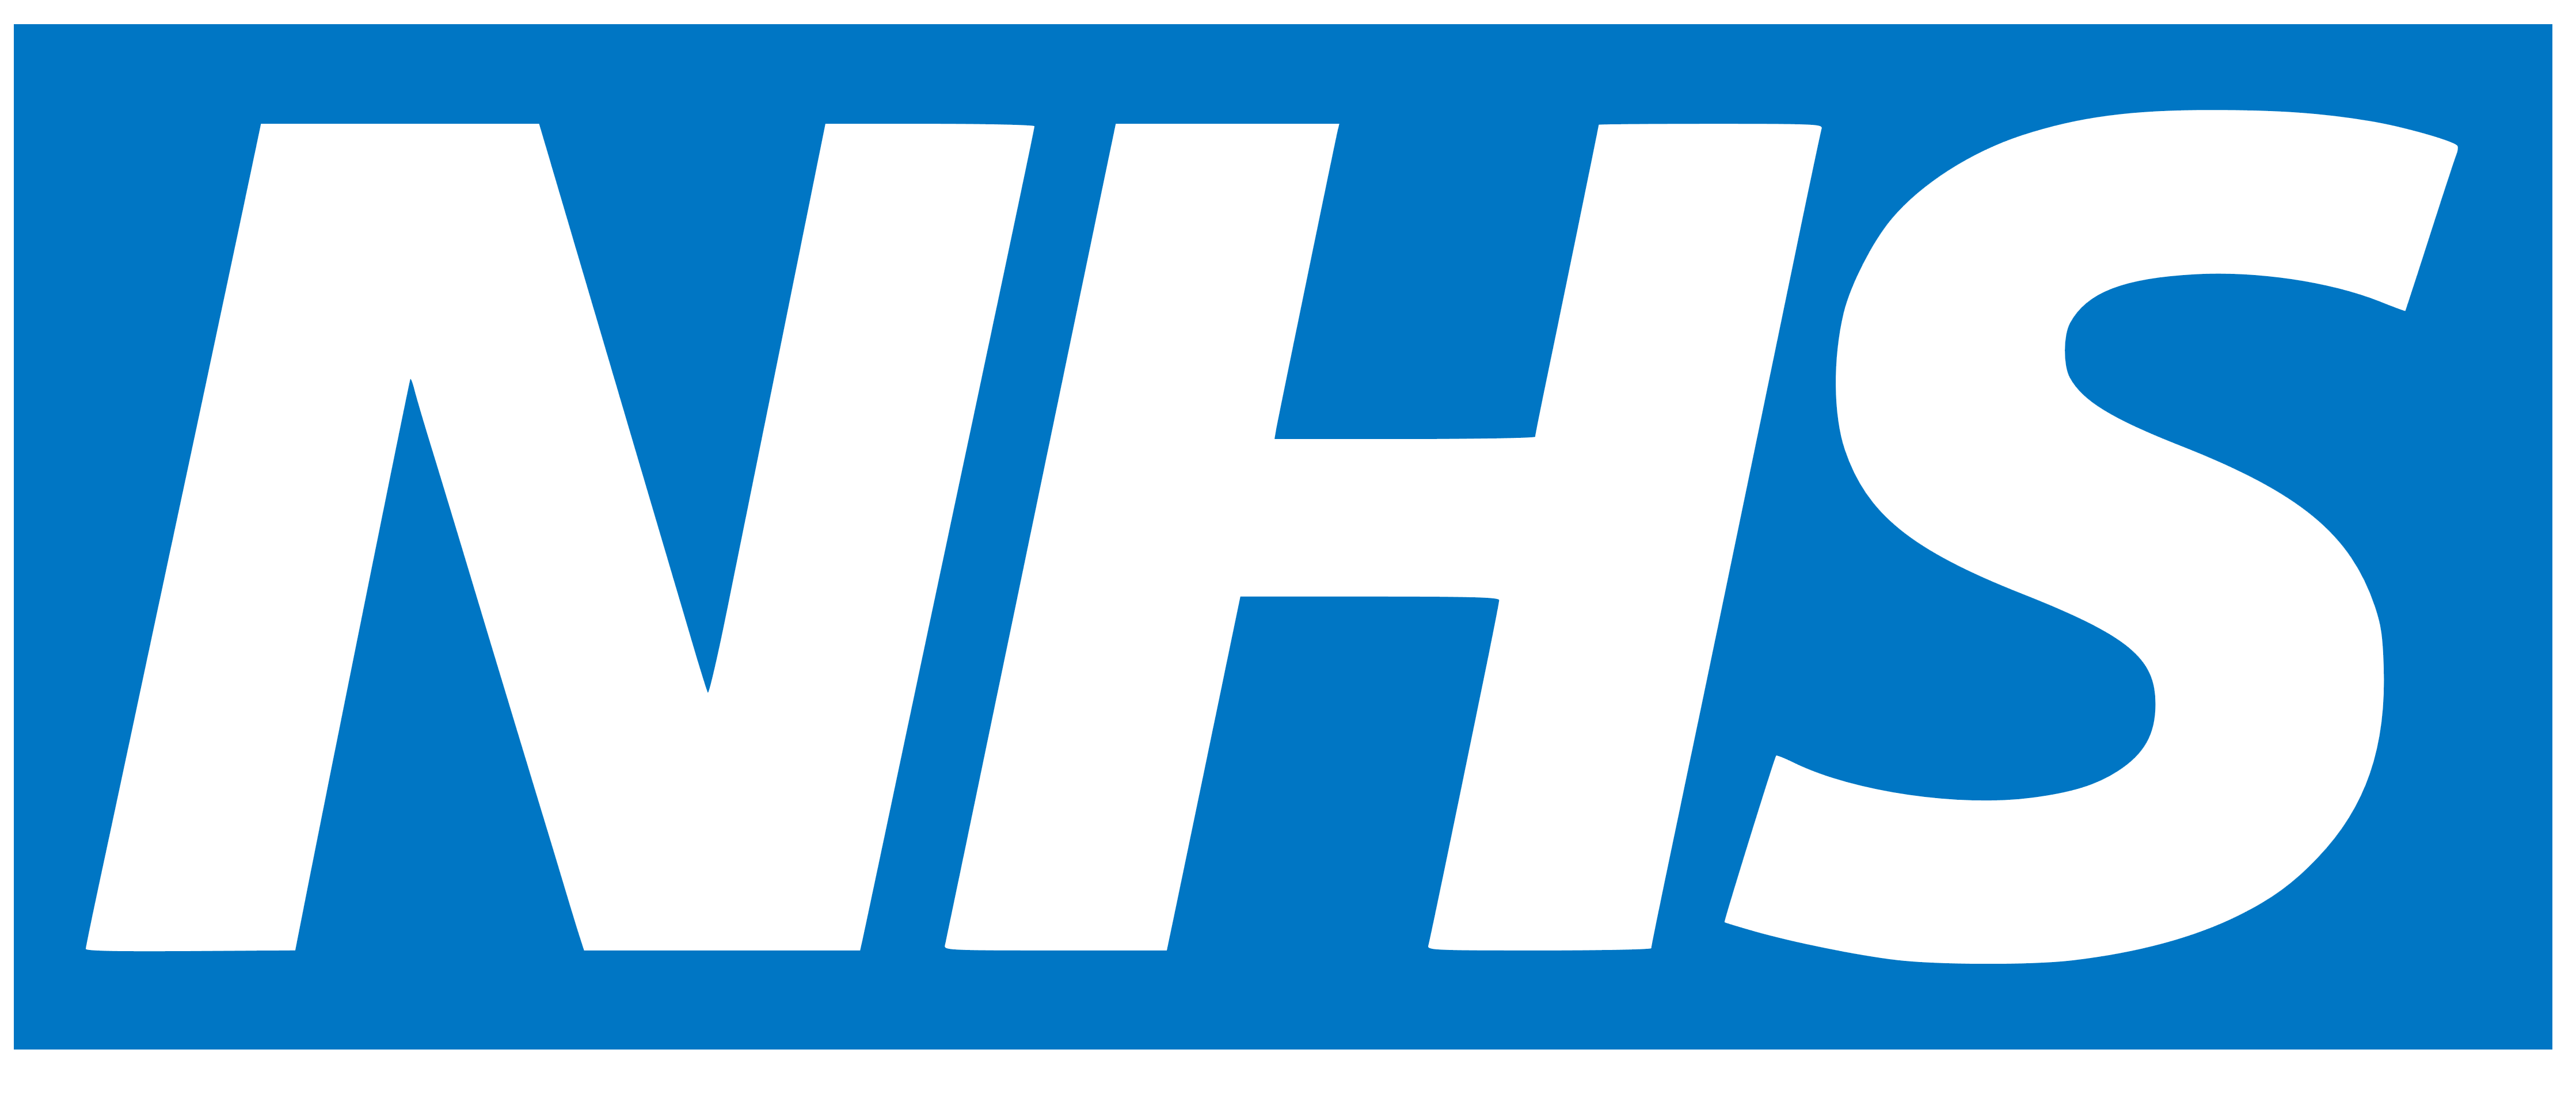 NHS logo, logotype